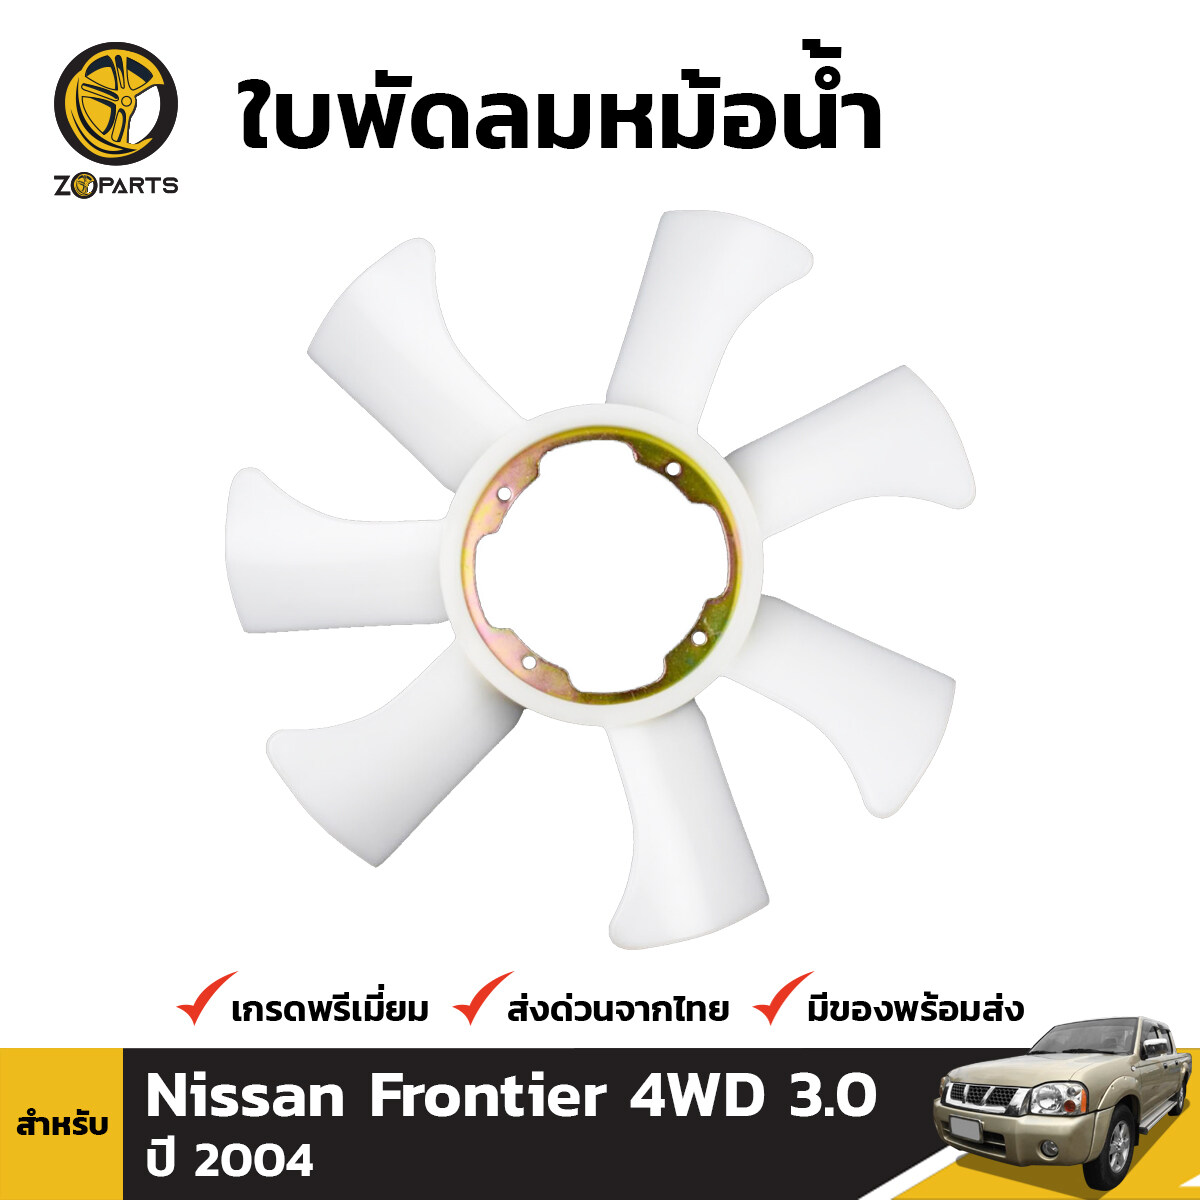 ใบพัดลมหม้อน้ำ สำหรับ Nissan Frontier รุ่น 4WD 3.0 ปี 2004 นิสสัน ฟรอนเทียร์